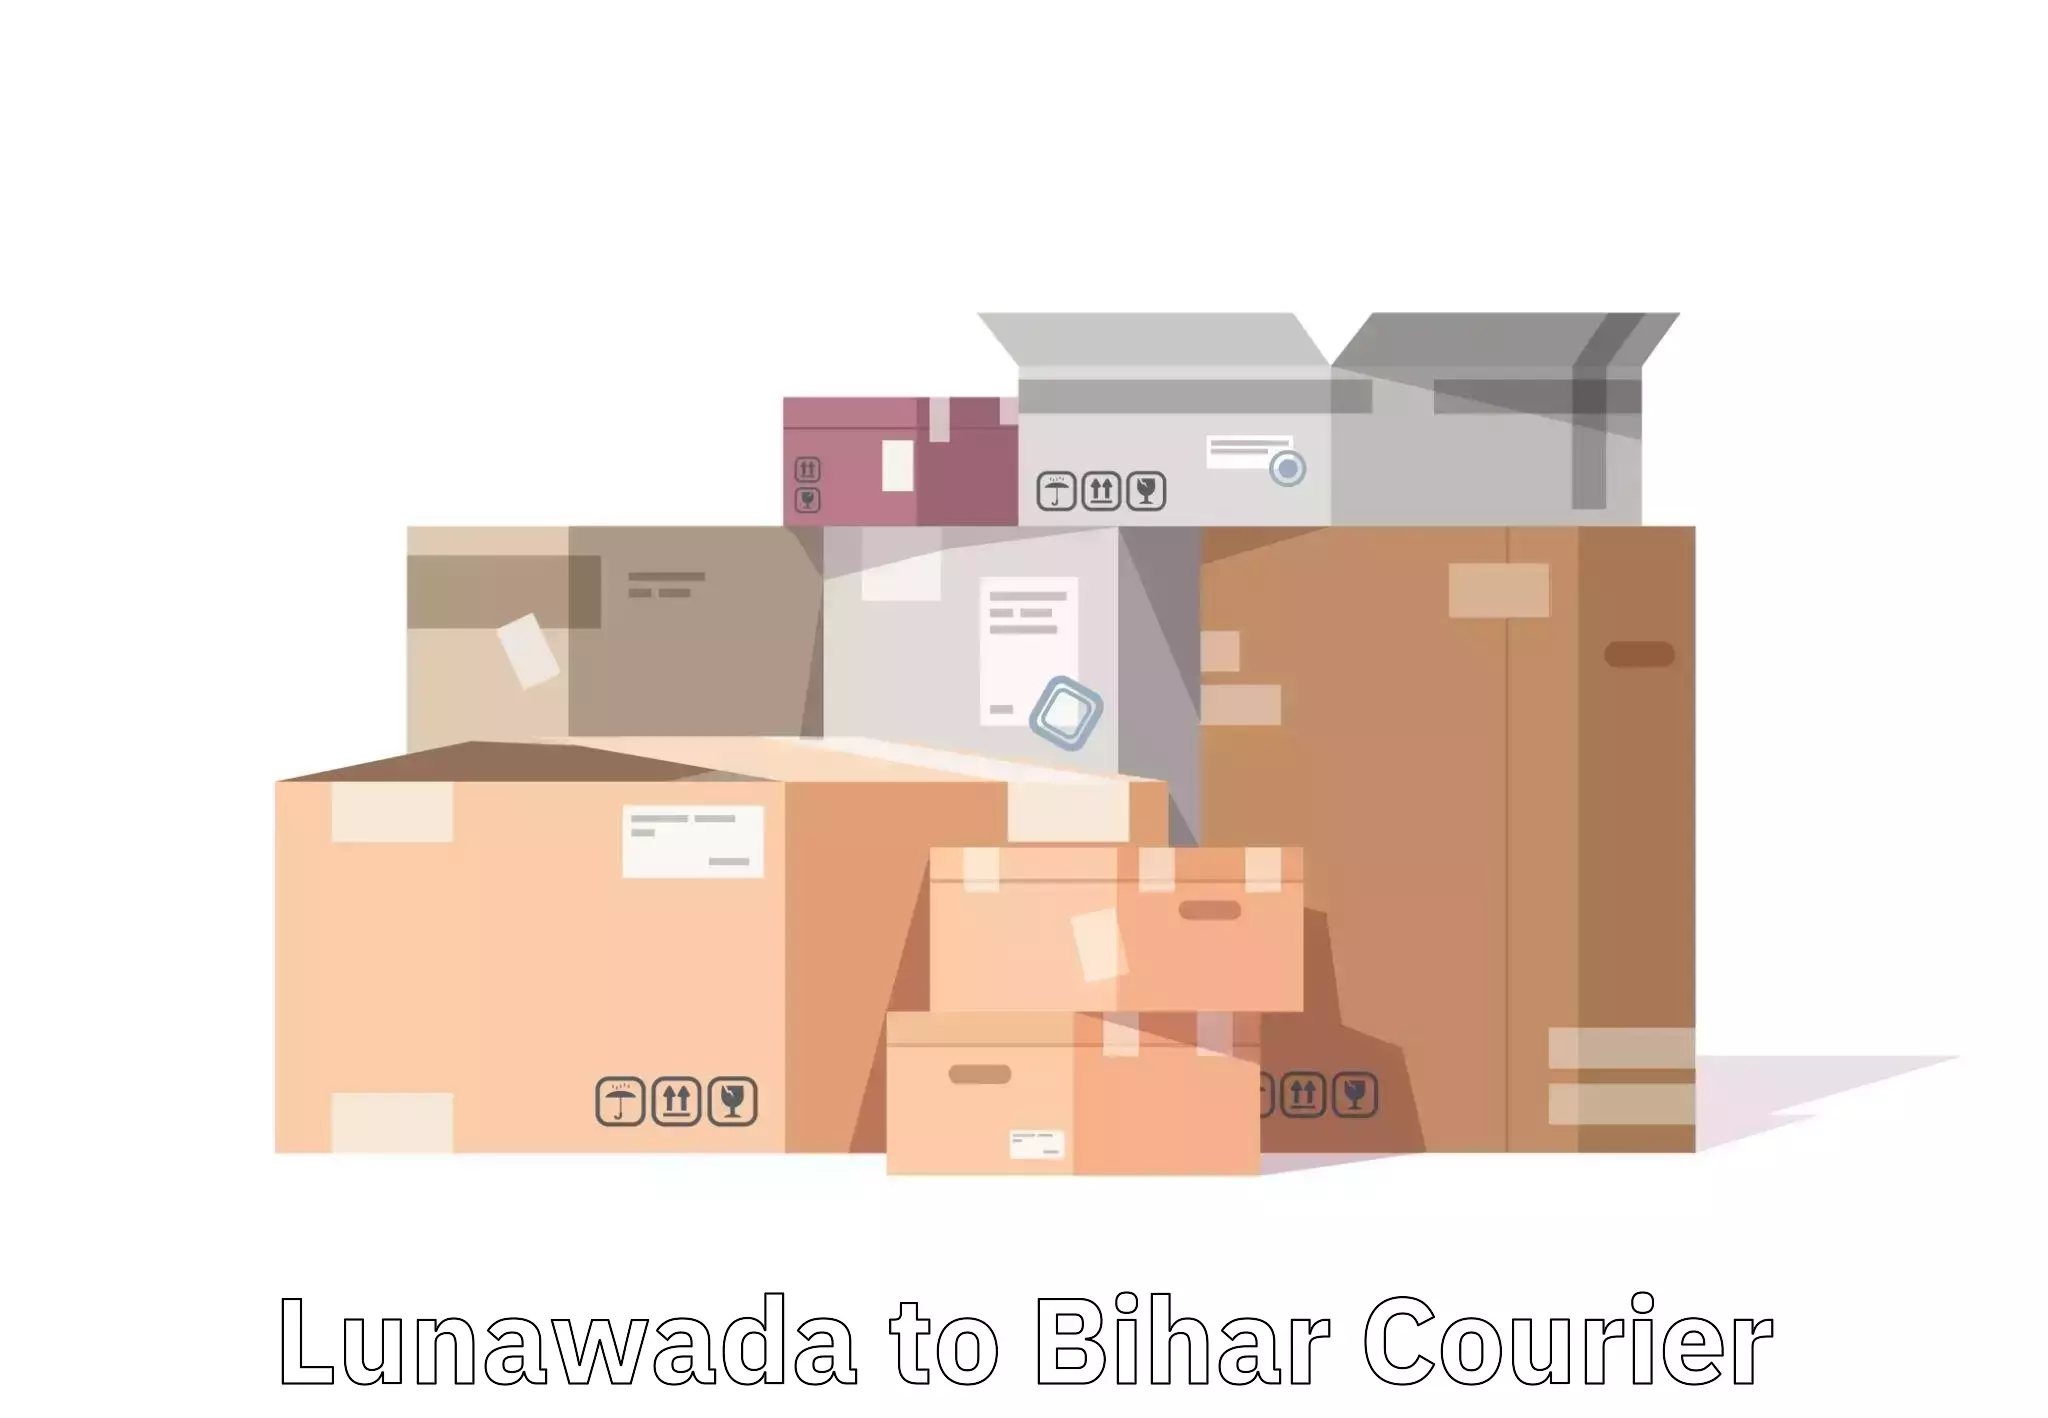 Baggage transport innovation in Lunawada to Manjhaul